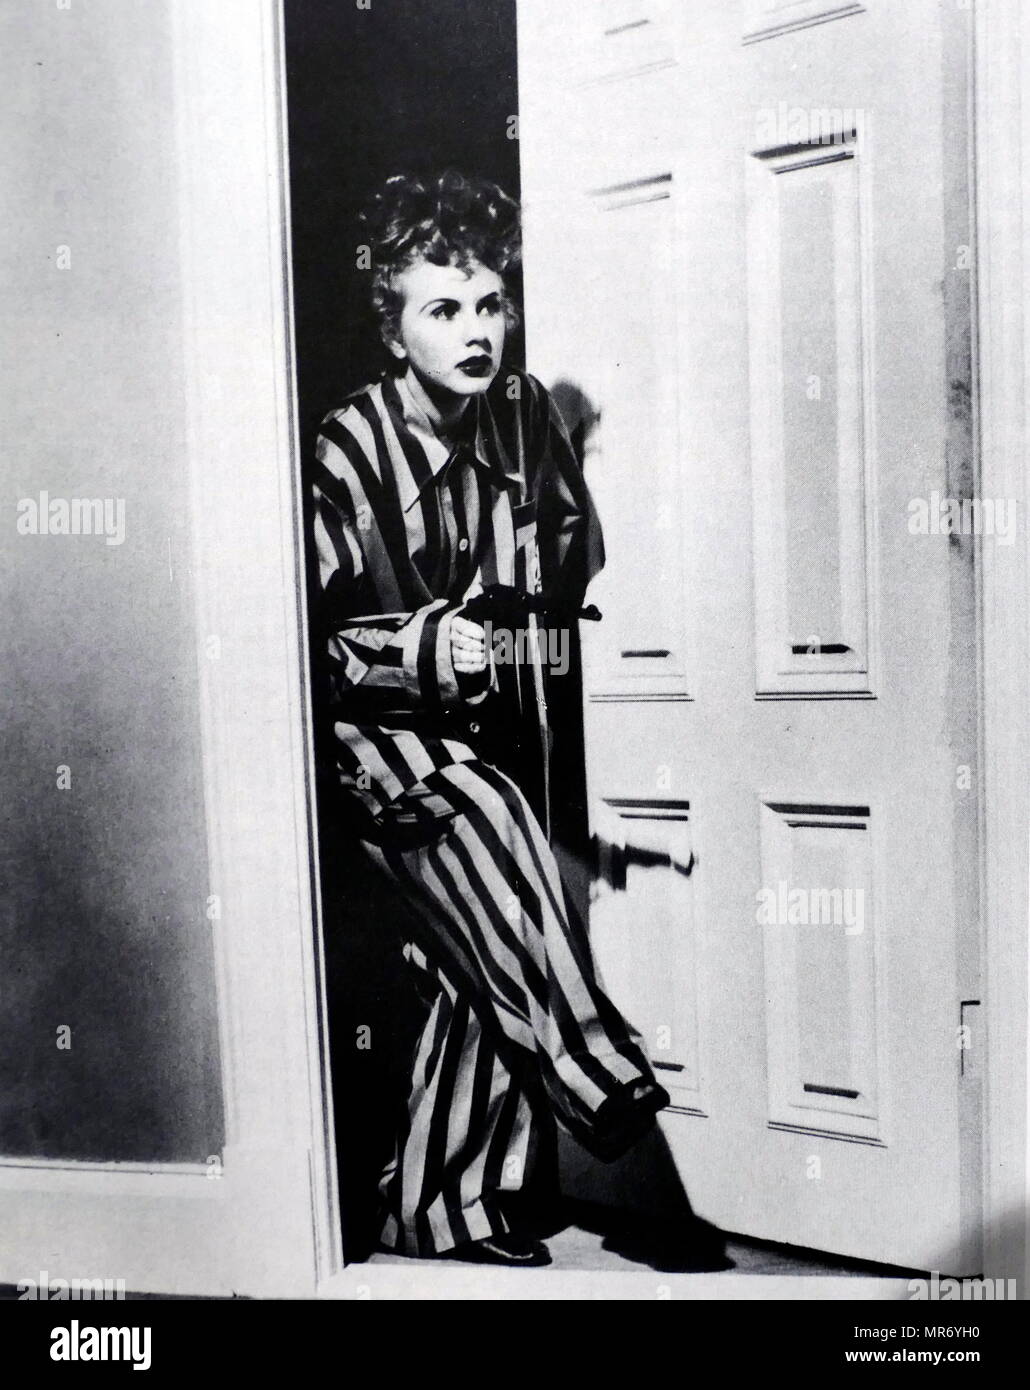 Dame sur un train est un film noir, 1945 Crime, film réalisé par Charles David et avec Deanna Durbin. Basé sur une histoire de Leslie Charteris, le film est à propos d'une femme témoin d'un meurtre dans un bâtiment proche de la fenêtre son train. Edna Mae Durbin (1921 - 2013), connu comme Deanna Durbin, était une actrice américaine et la chanteuse, qui est apparue dans les films dans les années 1930 et 1940 Banque D'Images